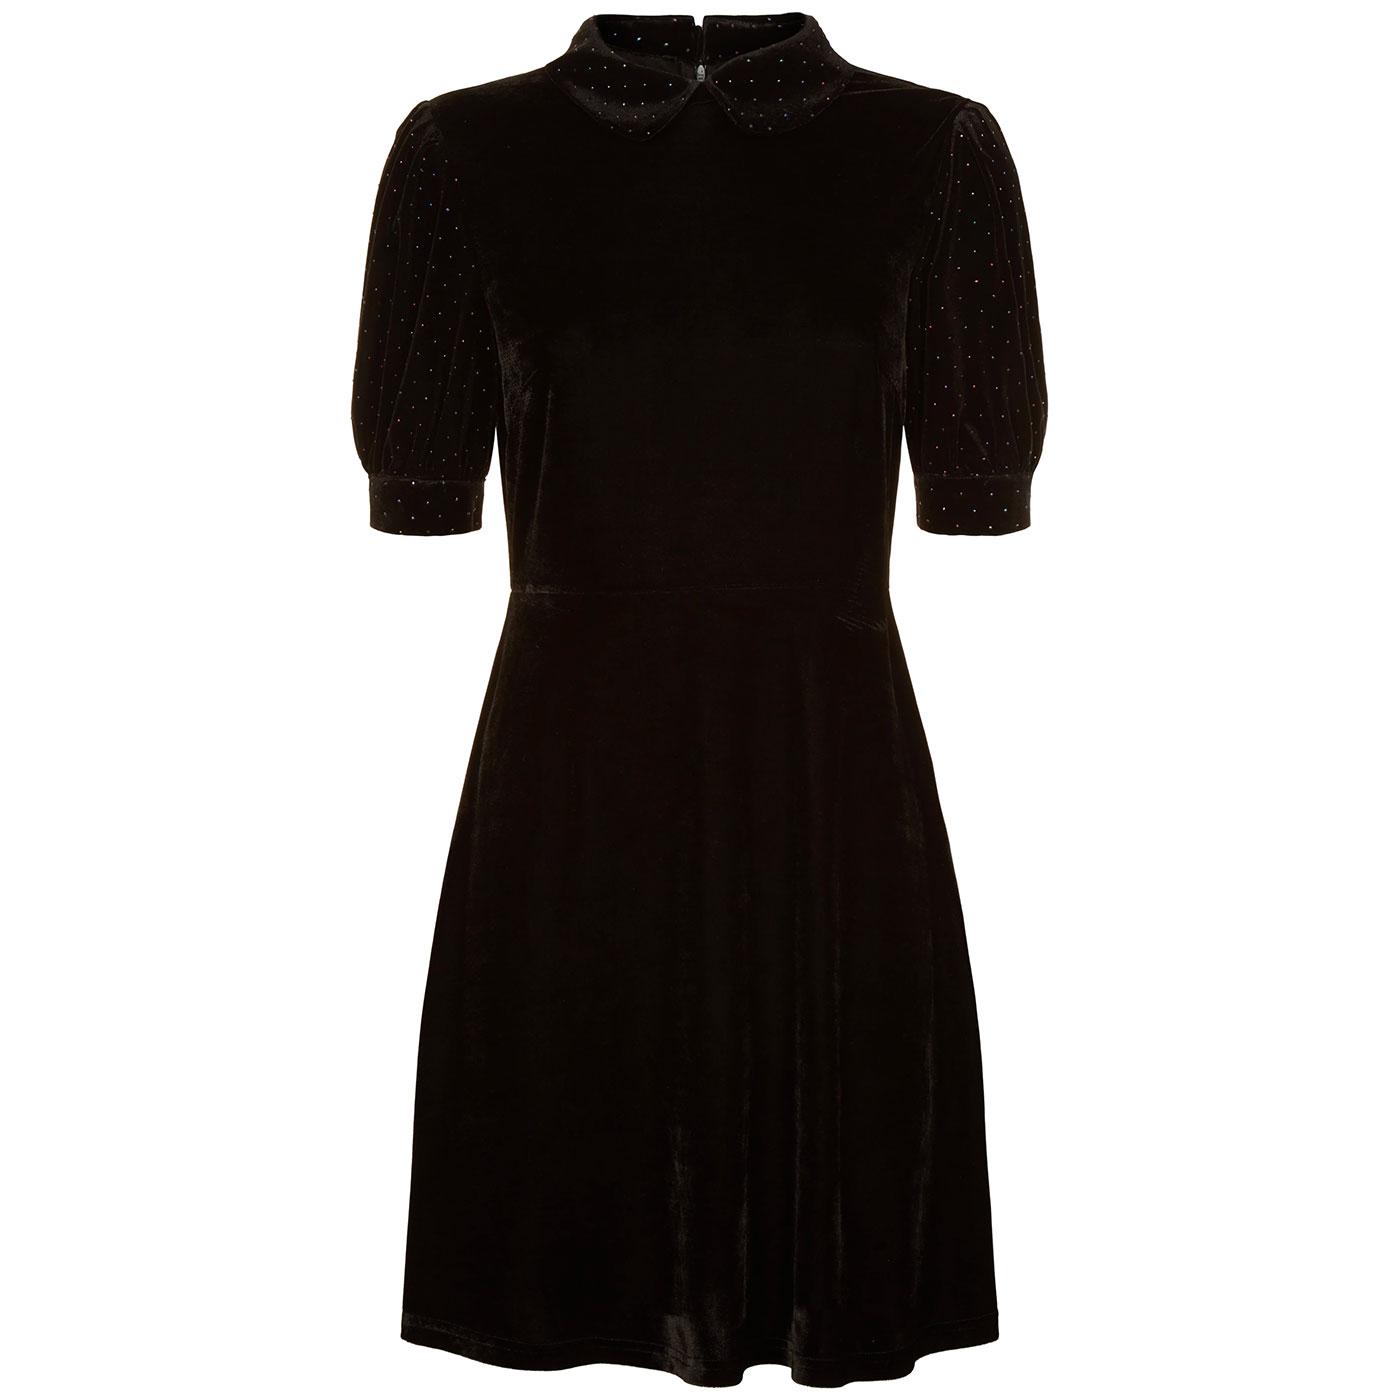 Grace TRAFFIC PEOPLE Retro 60s Mod Black Velvet Dress